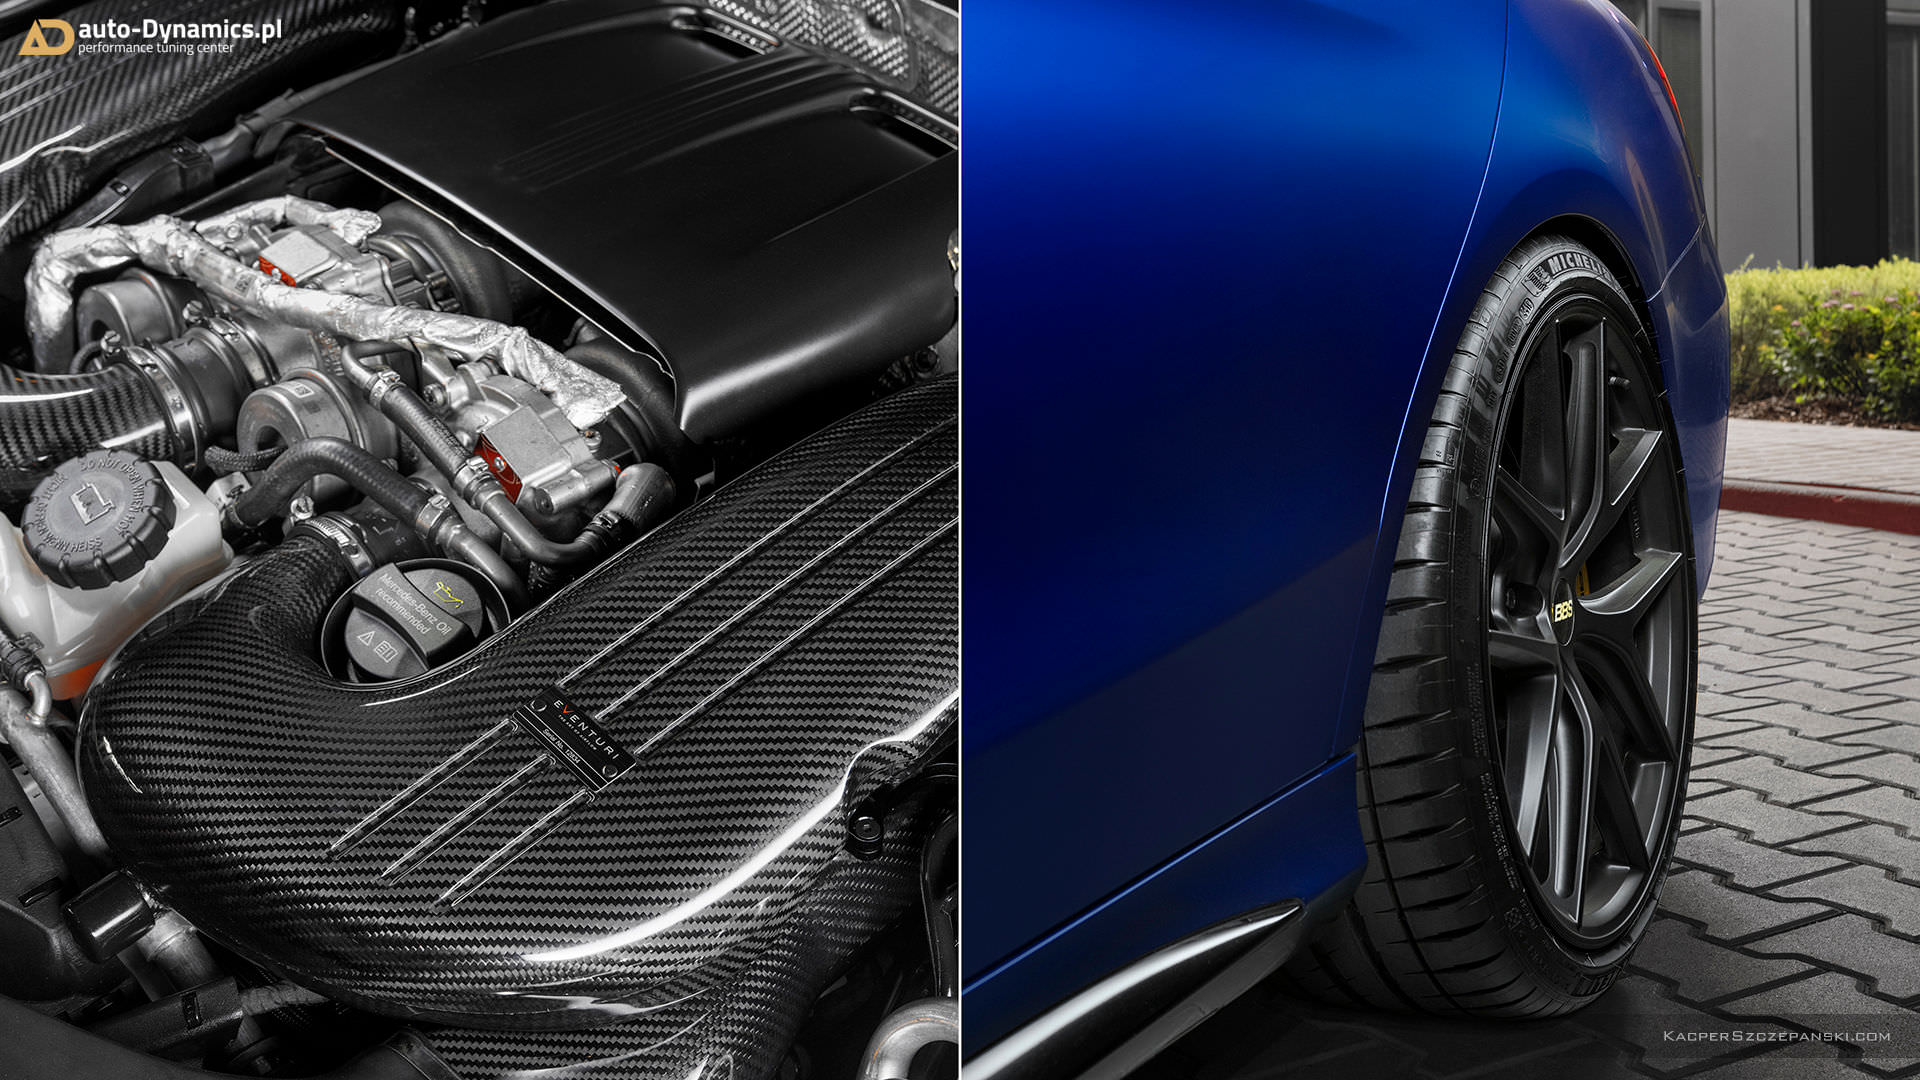 چرخ خودرو مرسدس بنز / Mercedes-AMG C63 S آبی رنگ با تیونینگ اتوداینامیکس